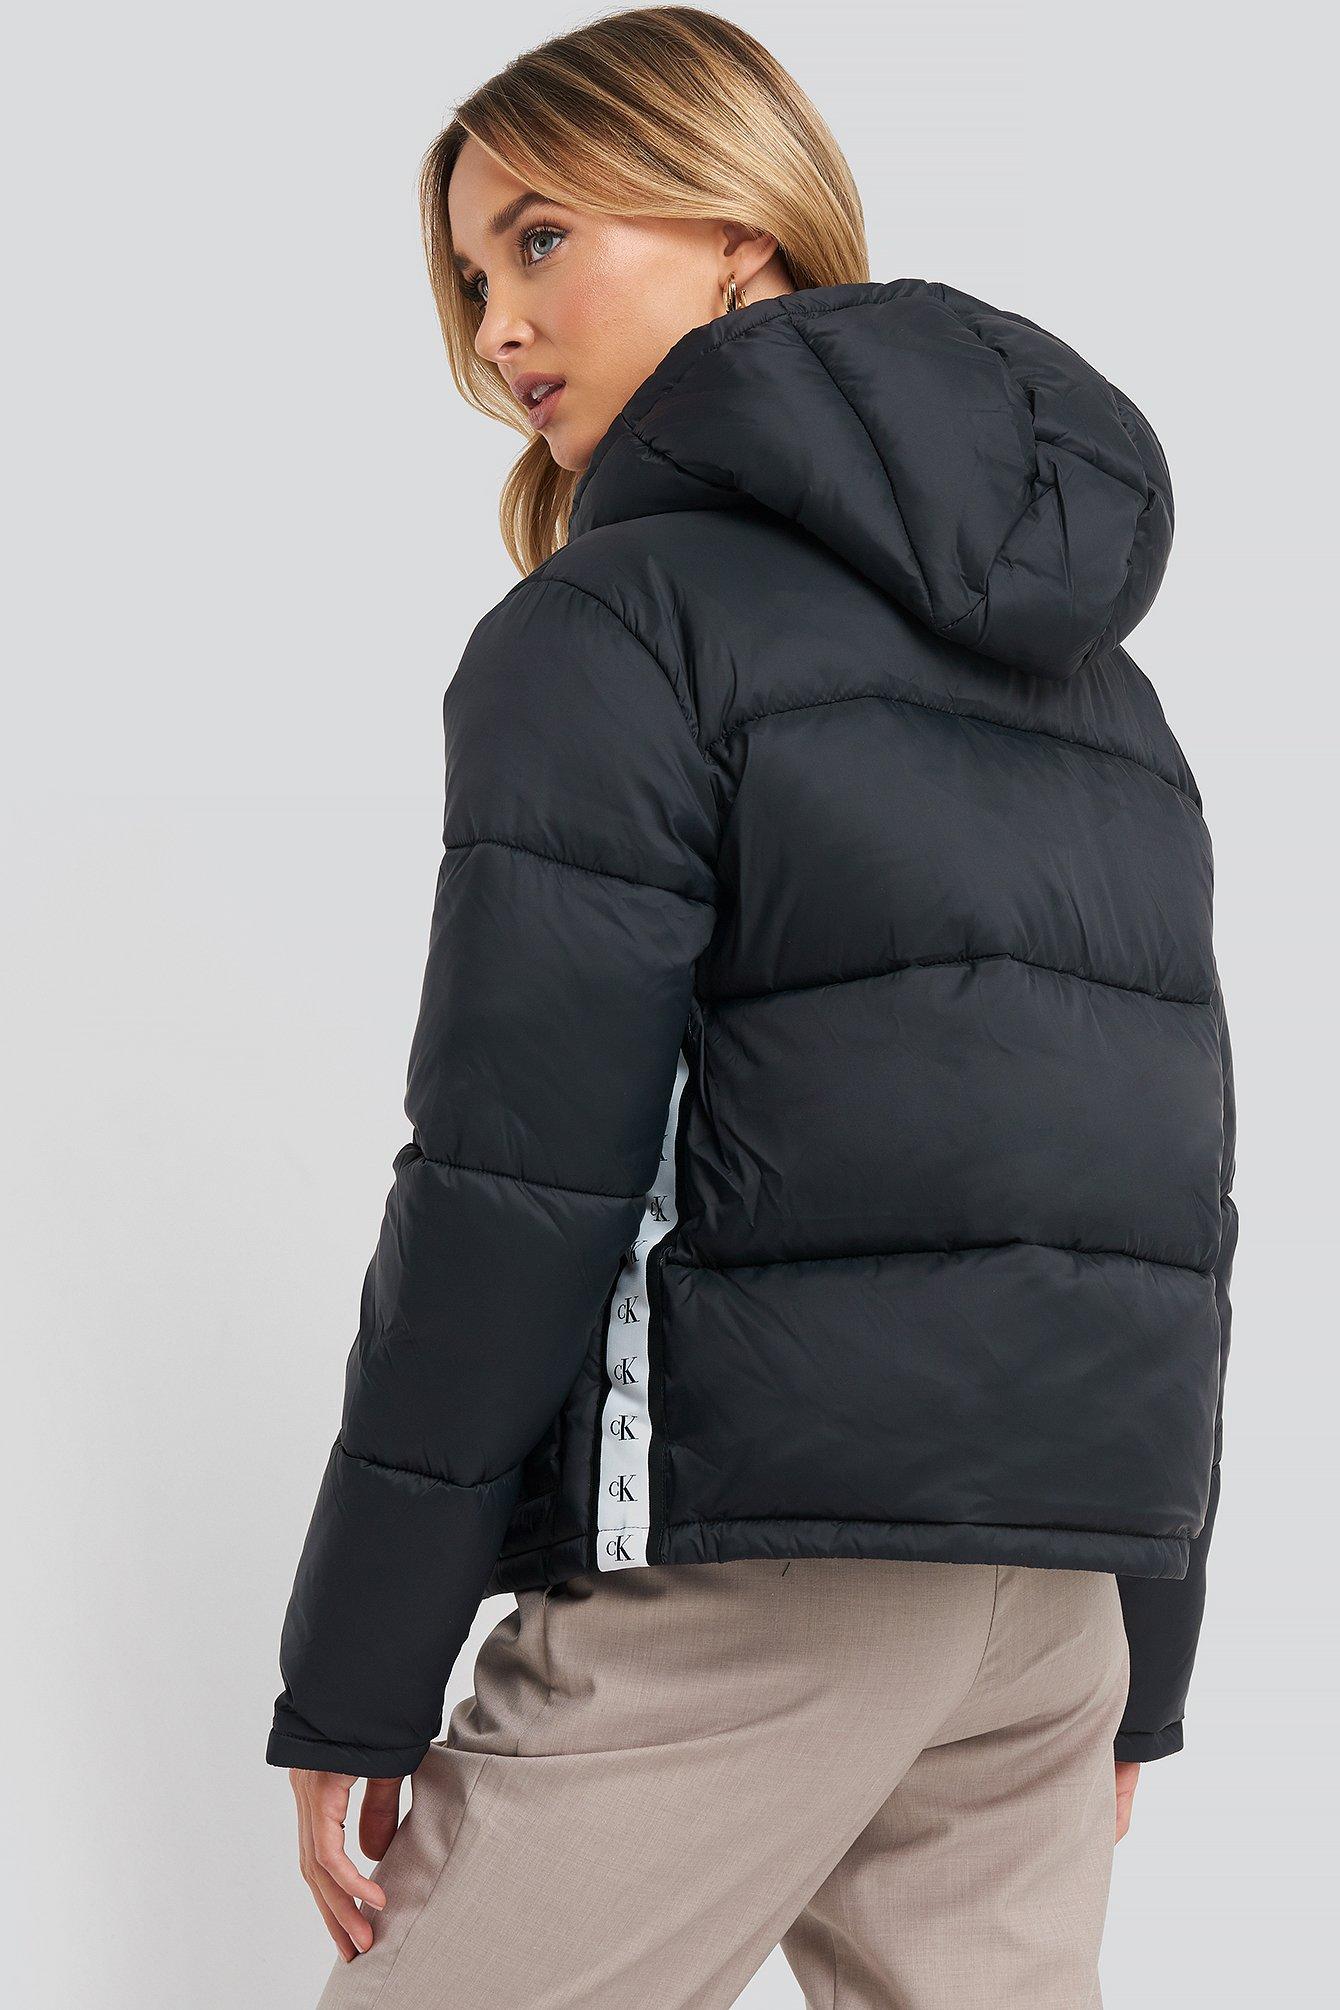 Calvin Klein Monogram Tape Lw Puffer Jacket in Schwarz | Lyst AT